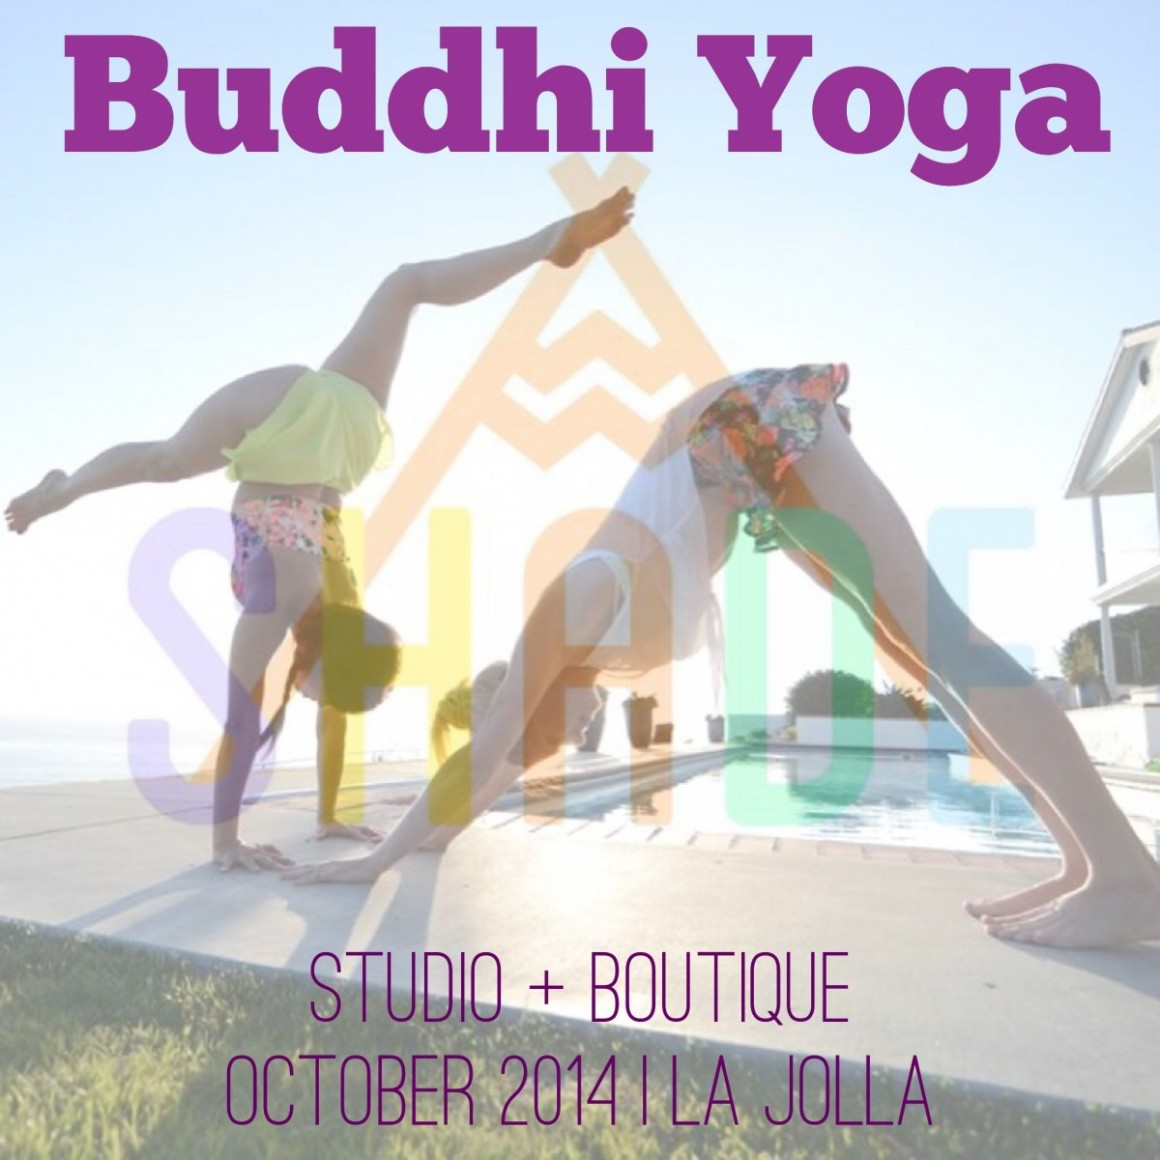 Buddhi Yoga Studio Opening